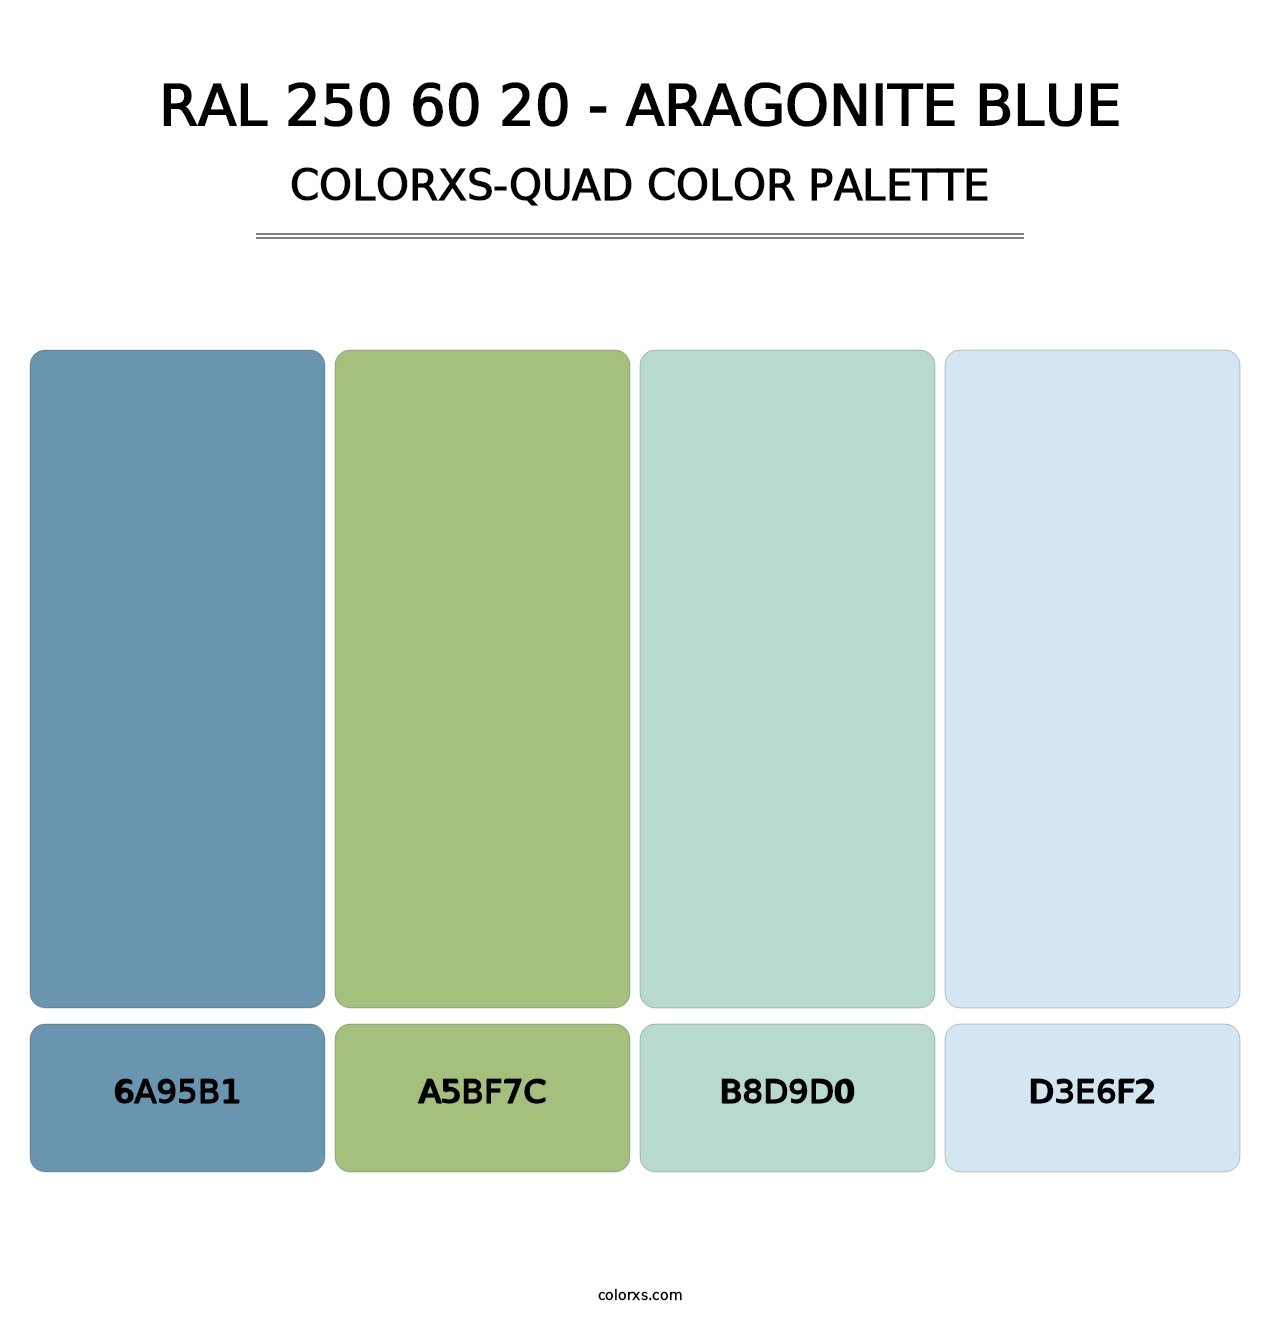 RAL 250 60 20 - Aragonite Blue - Colorxs Quad Palette